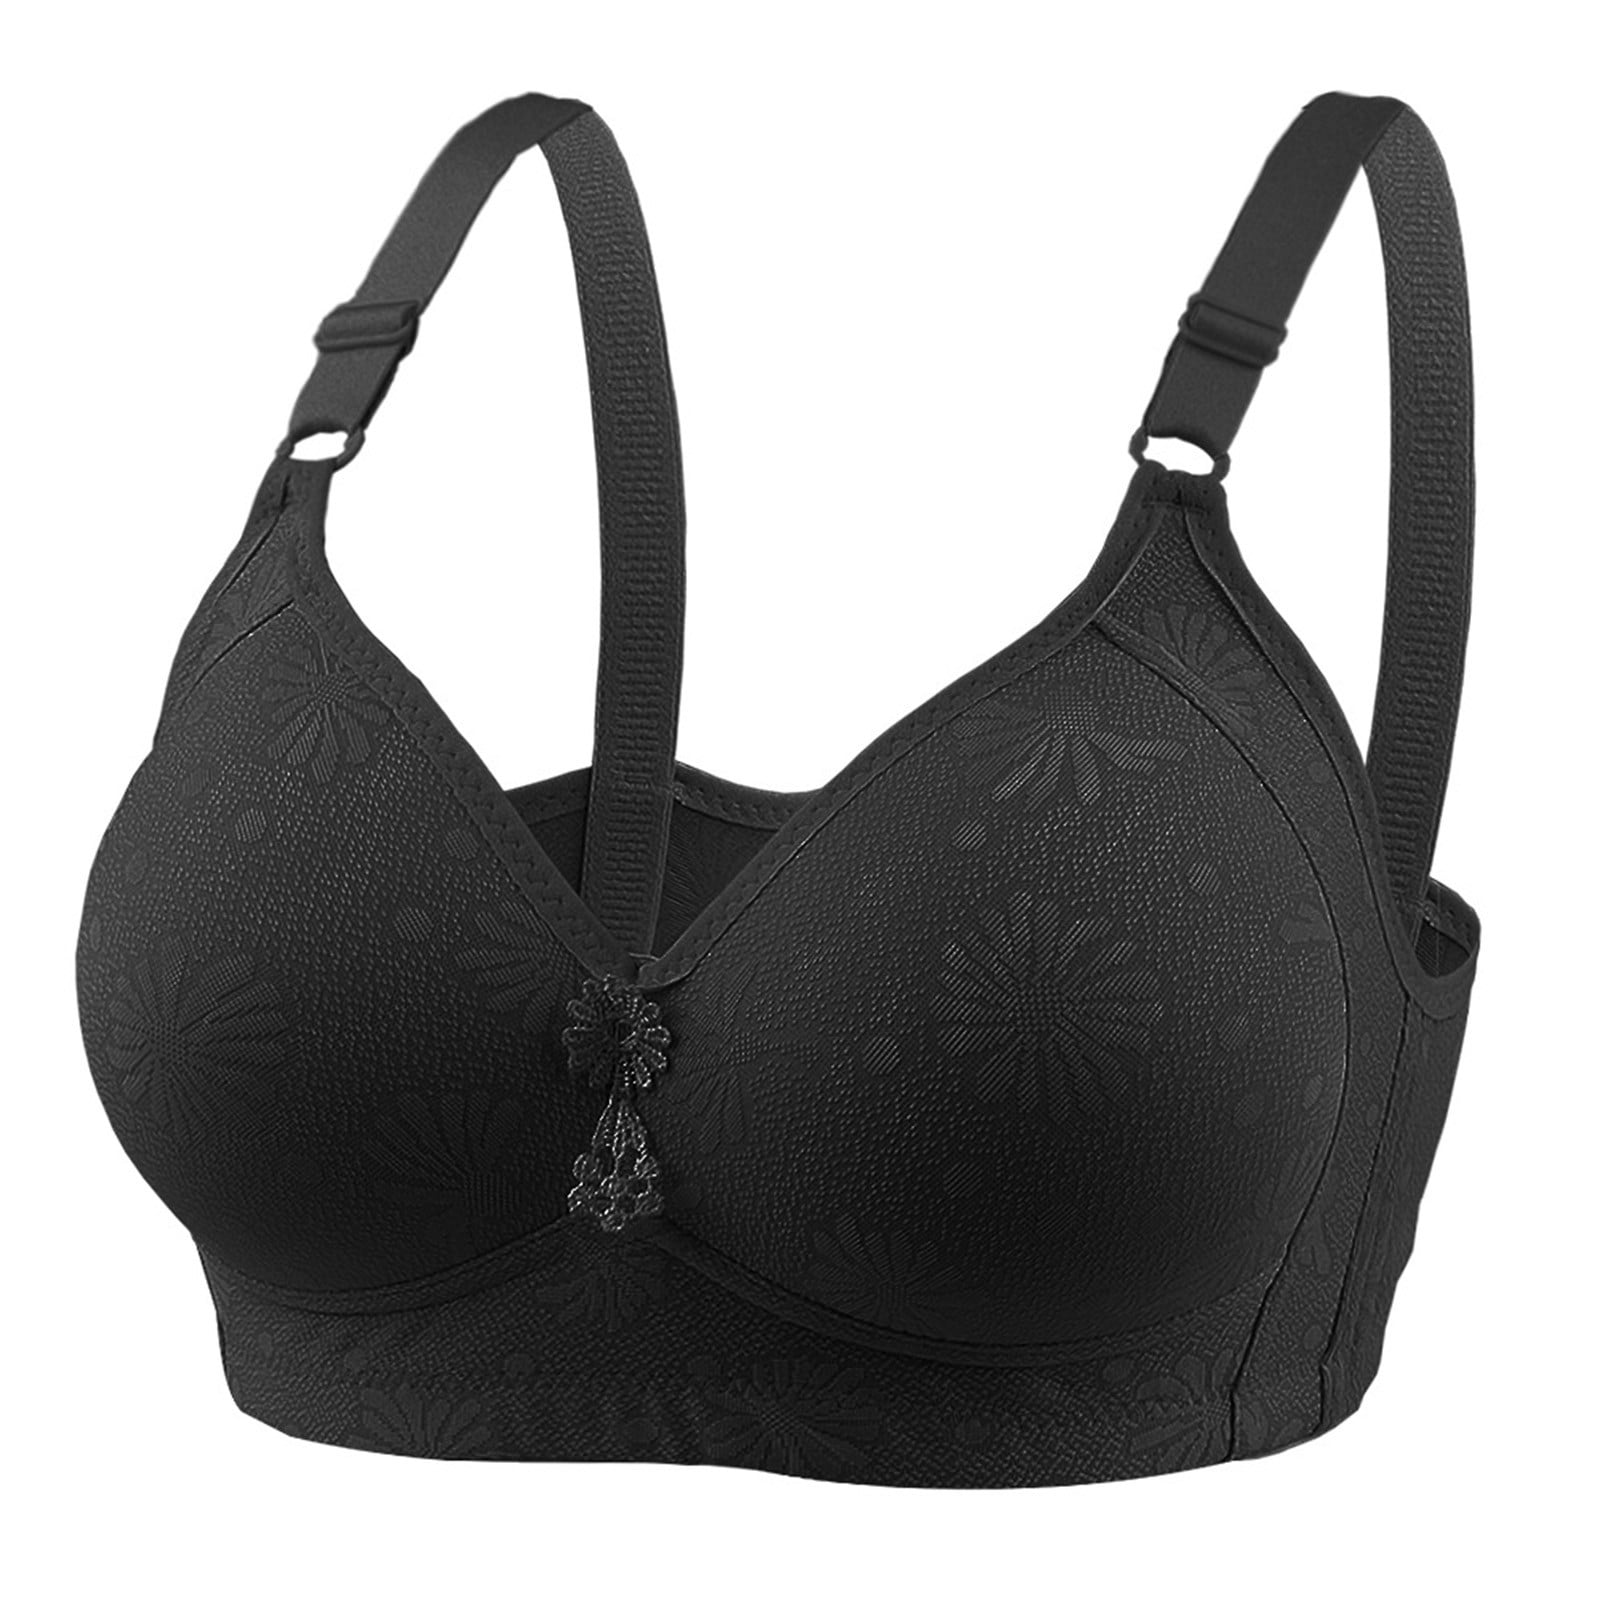 Buy online Black Solid Regular Bra from lingerie for Women by